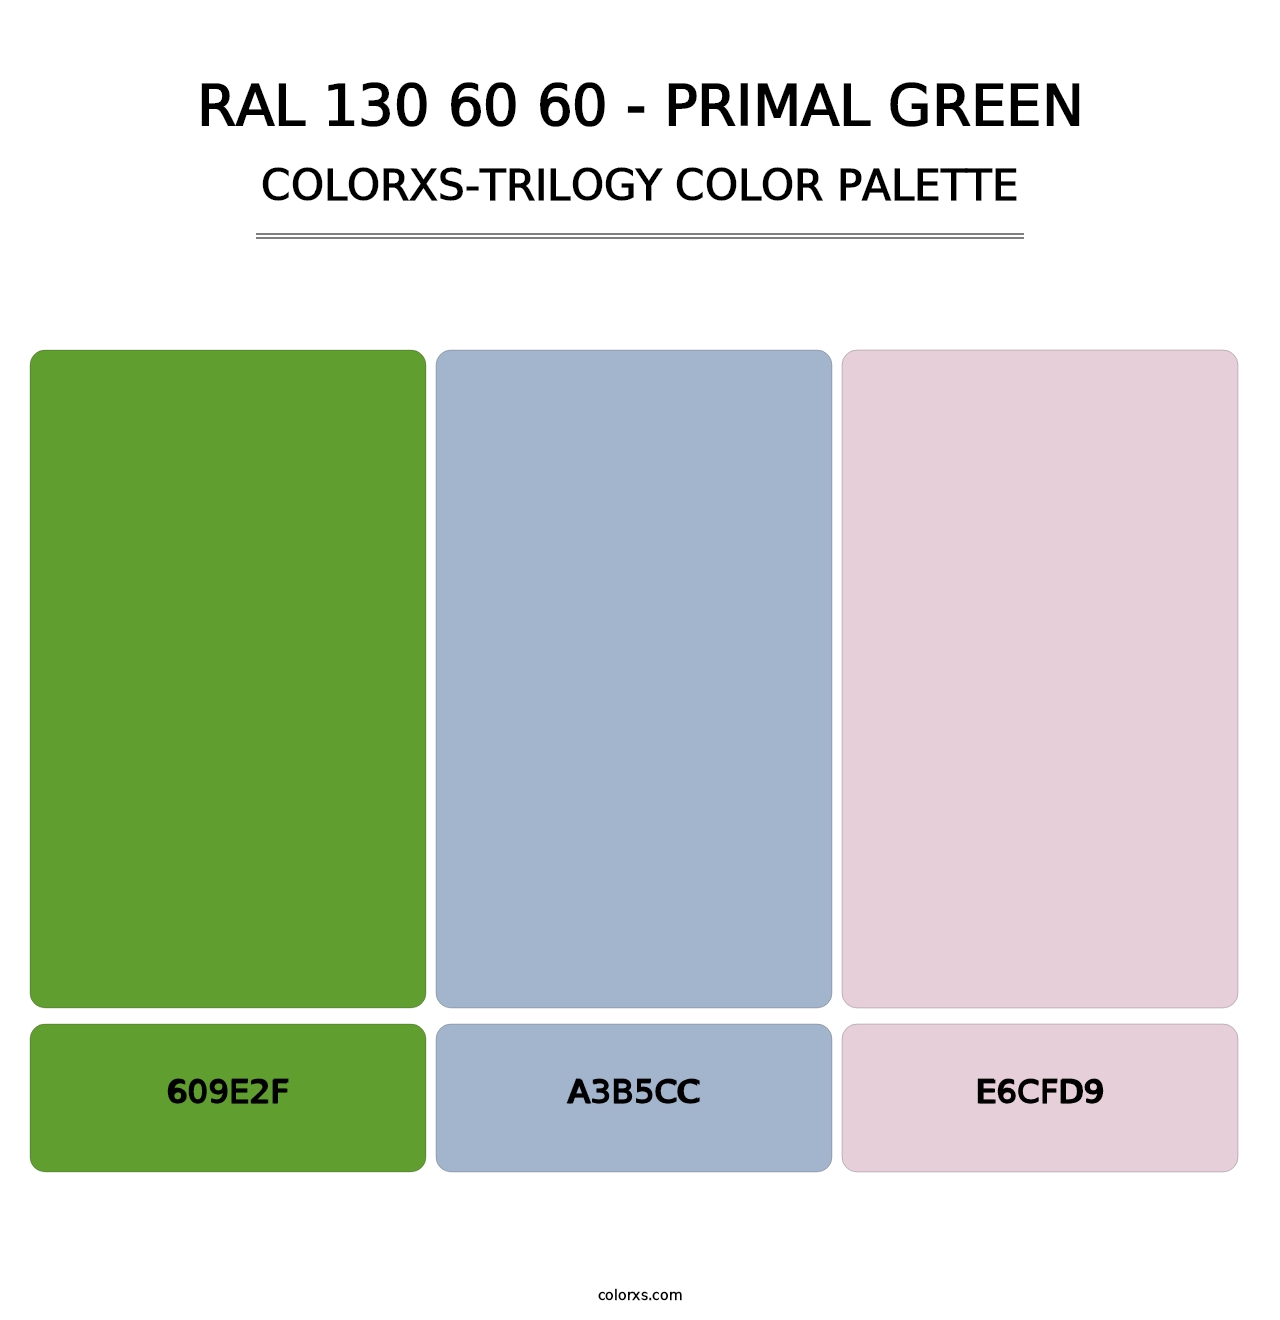 RAL 130 60 60 - Primal Green - Colorxs Trilogy Palette